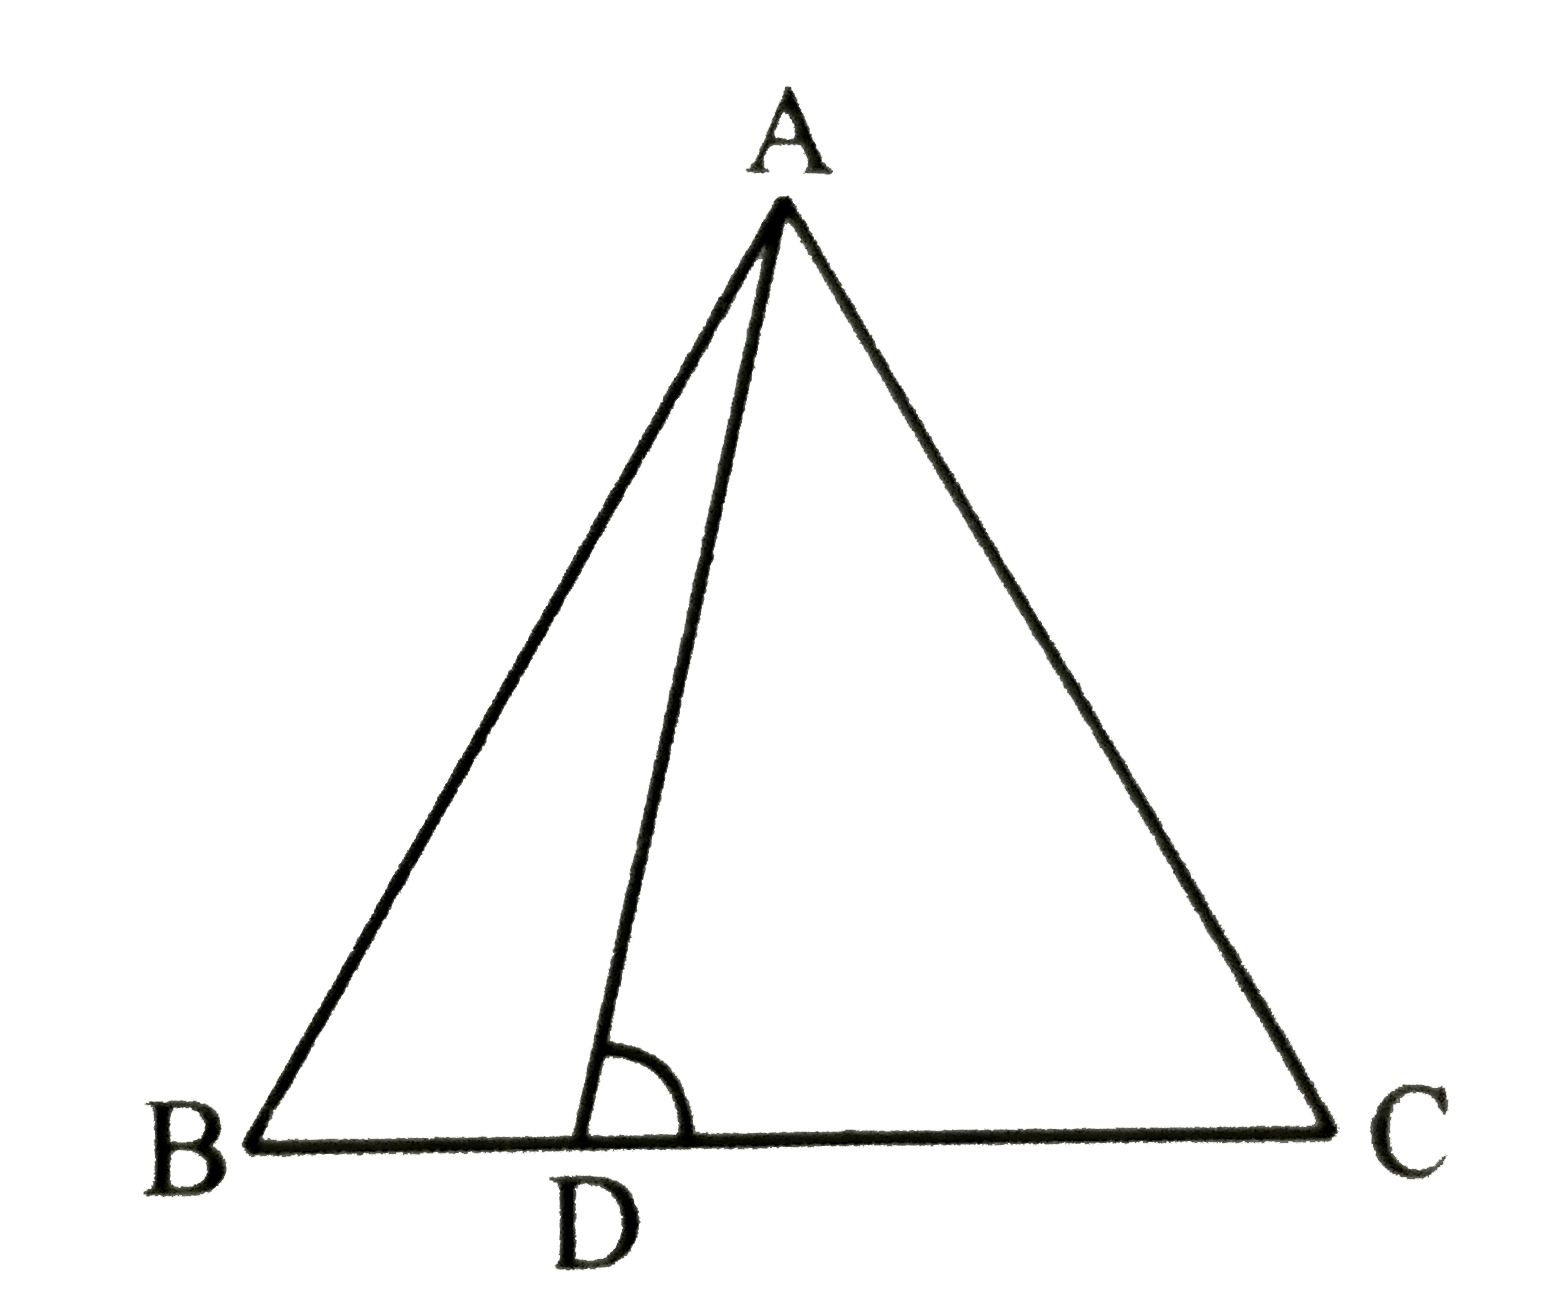 एक triangleABC में, भुजा BC पर एक बिंदु D है तथा angle ADC = angle BAC है तो सिद्ध कीजिए कि    (CA)/(CD) = (CB)/(CA)